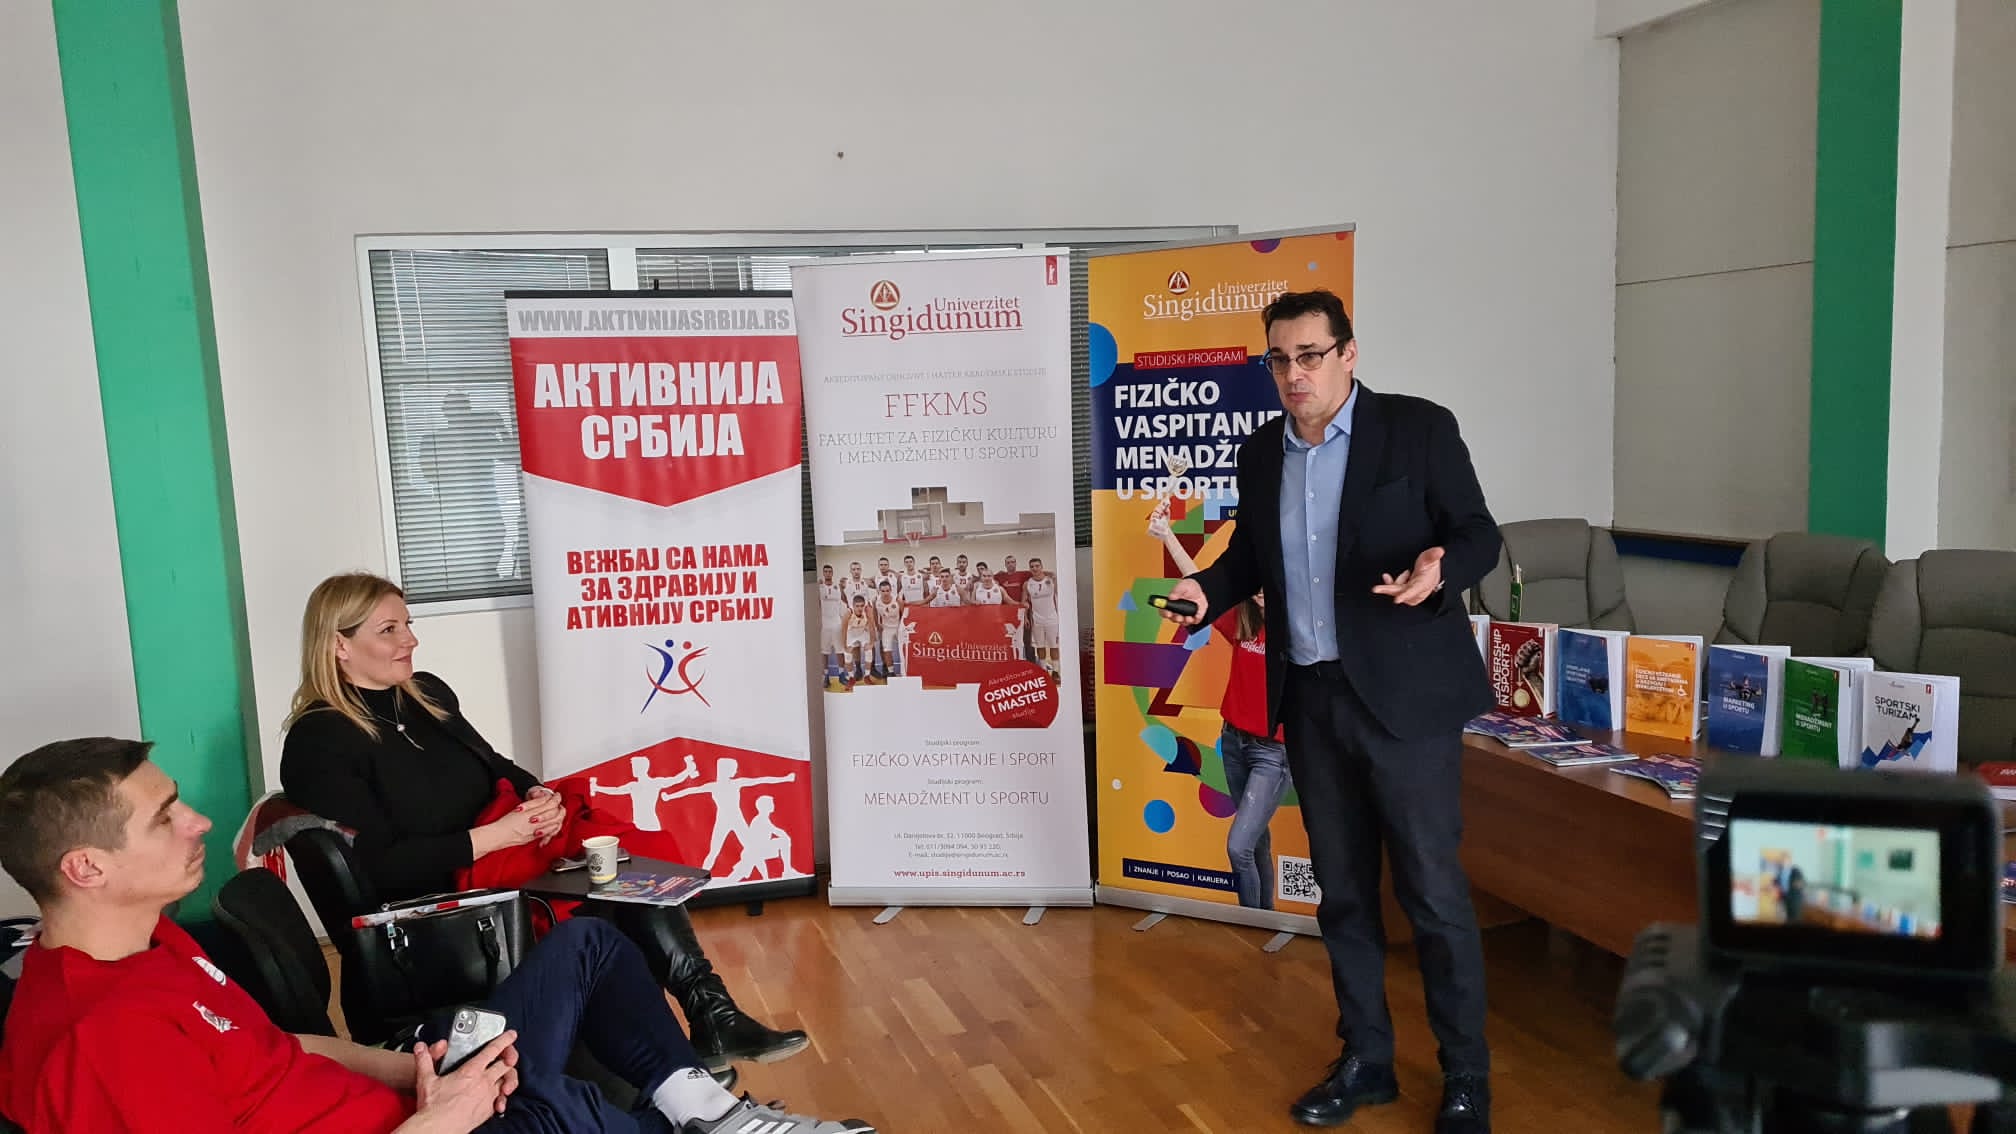 Aktivnija Srbija i univerzitet Singidunum  održali su promotivna predavanja na Sajmu sporta u Kragujevcu